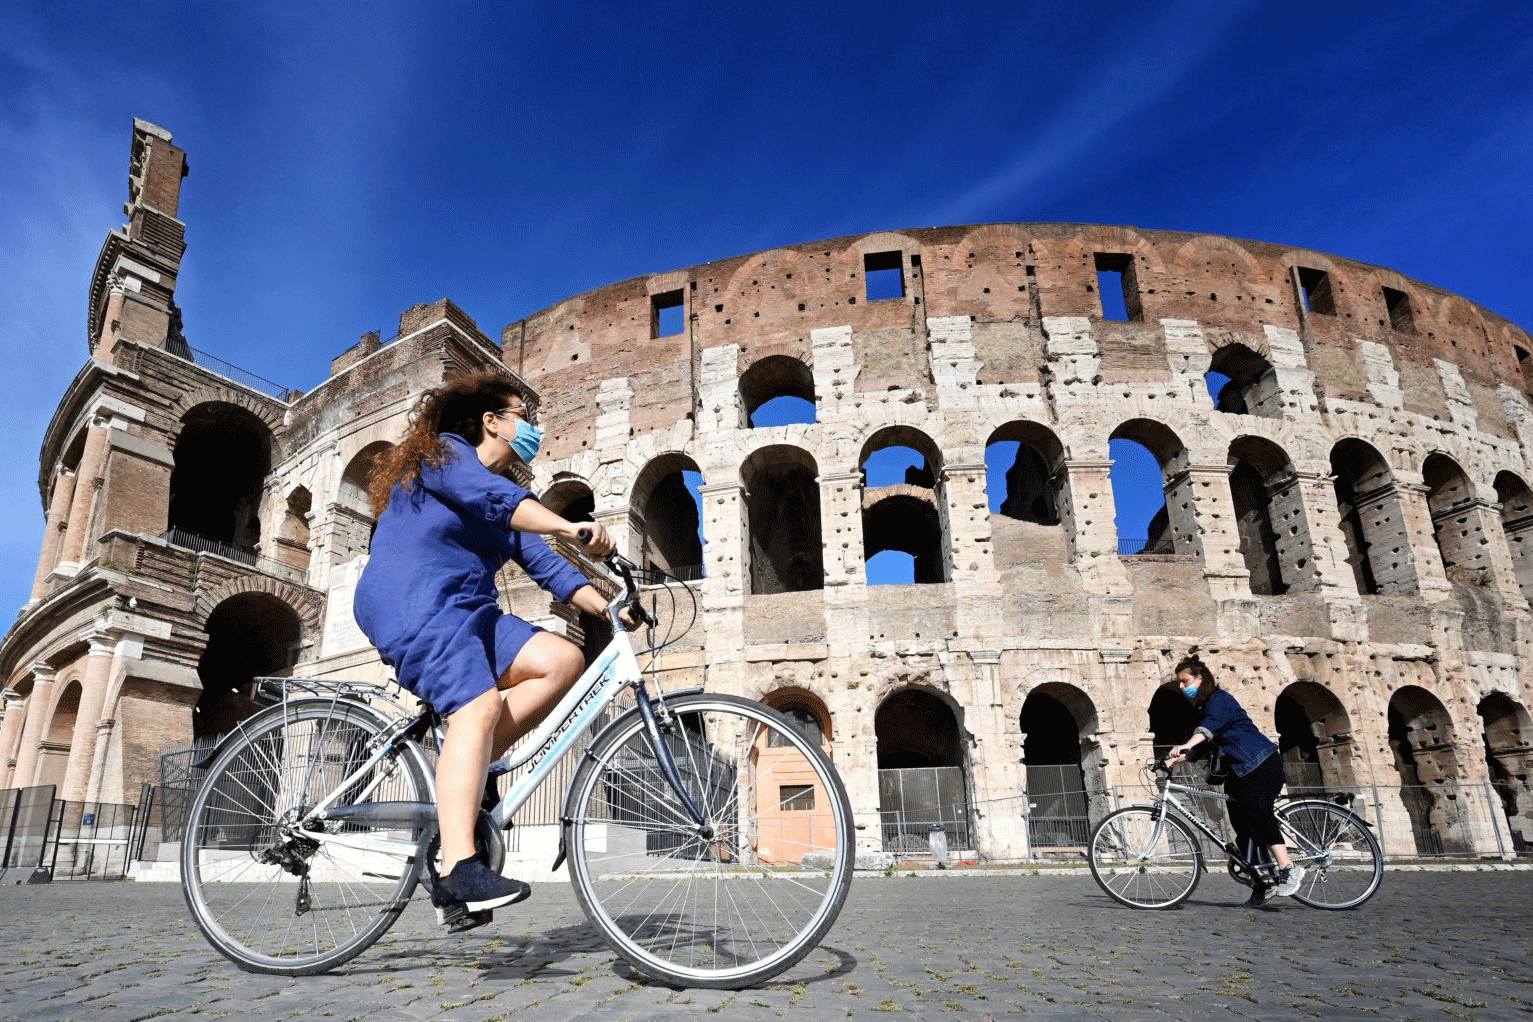 فقد عشرات الآلاف من الجيل الطالع في إيطاليا وظائفهم، وتبدو في الصورة فتاة على دراجة في روما